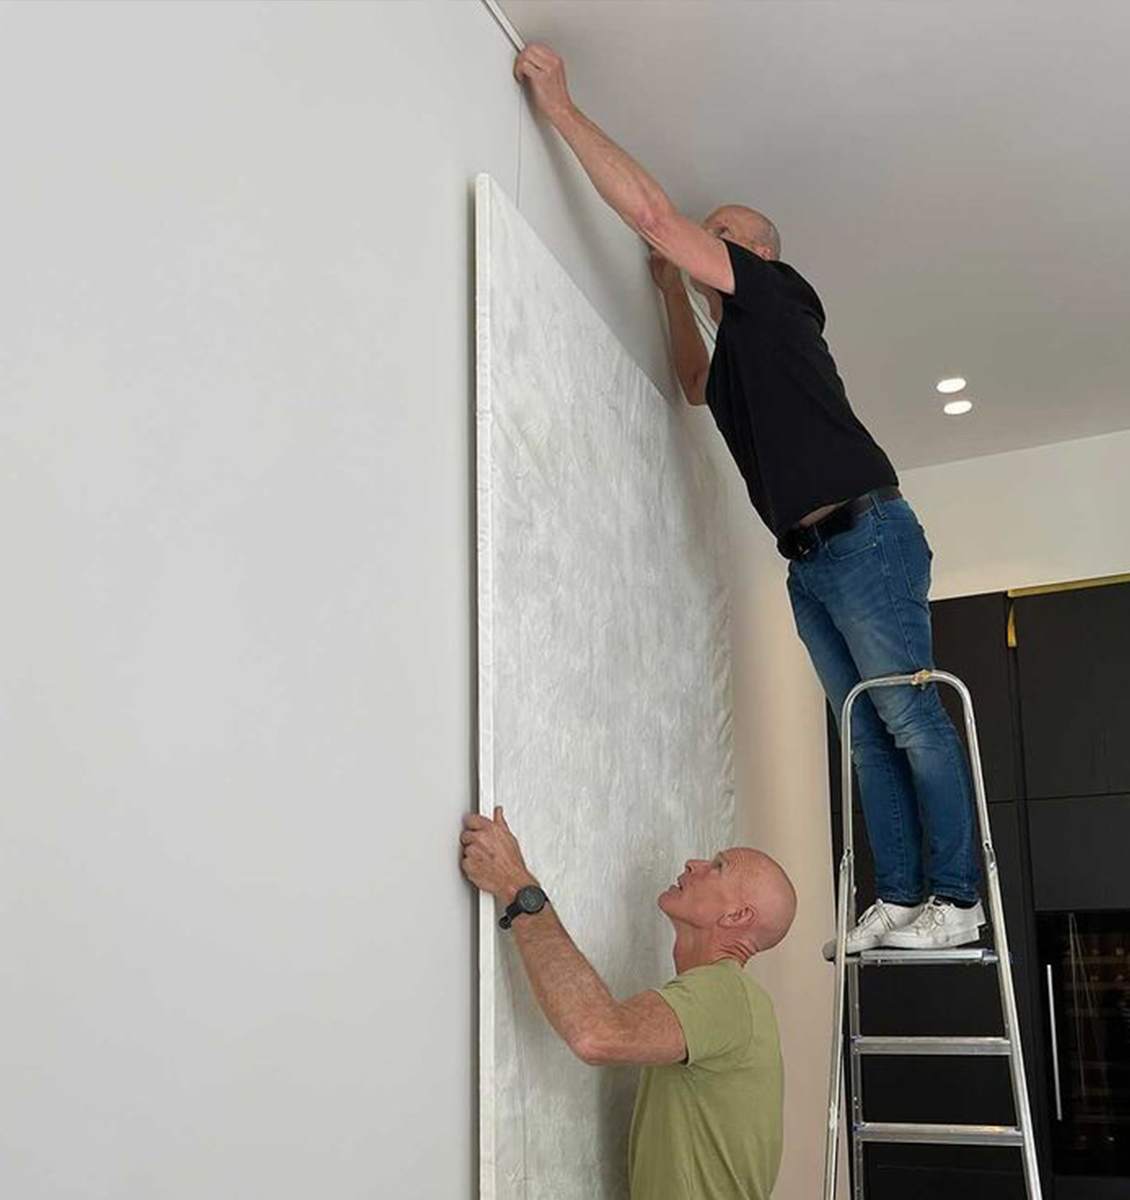 NL twee mannen op trap die groot schilderij hangen